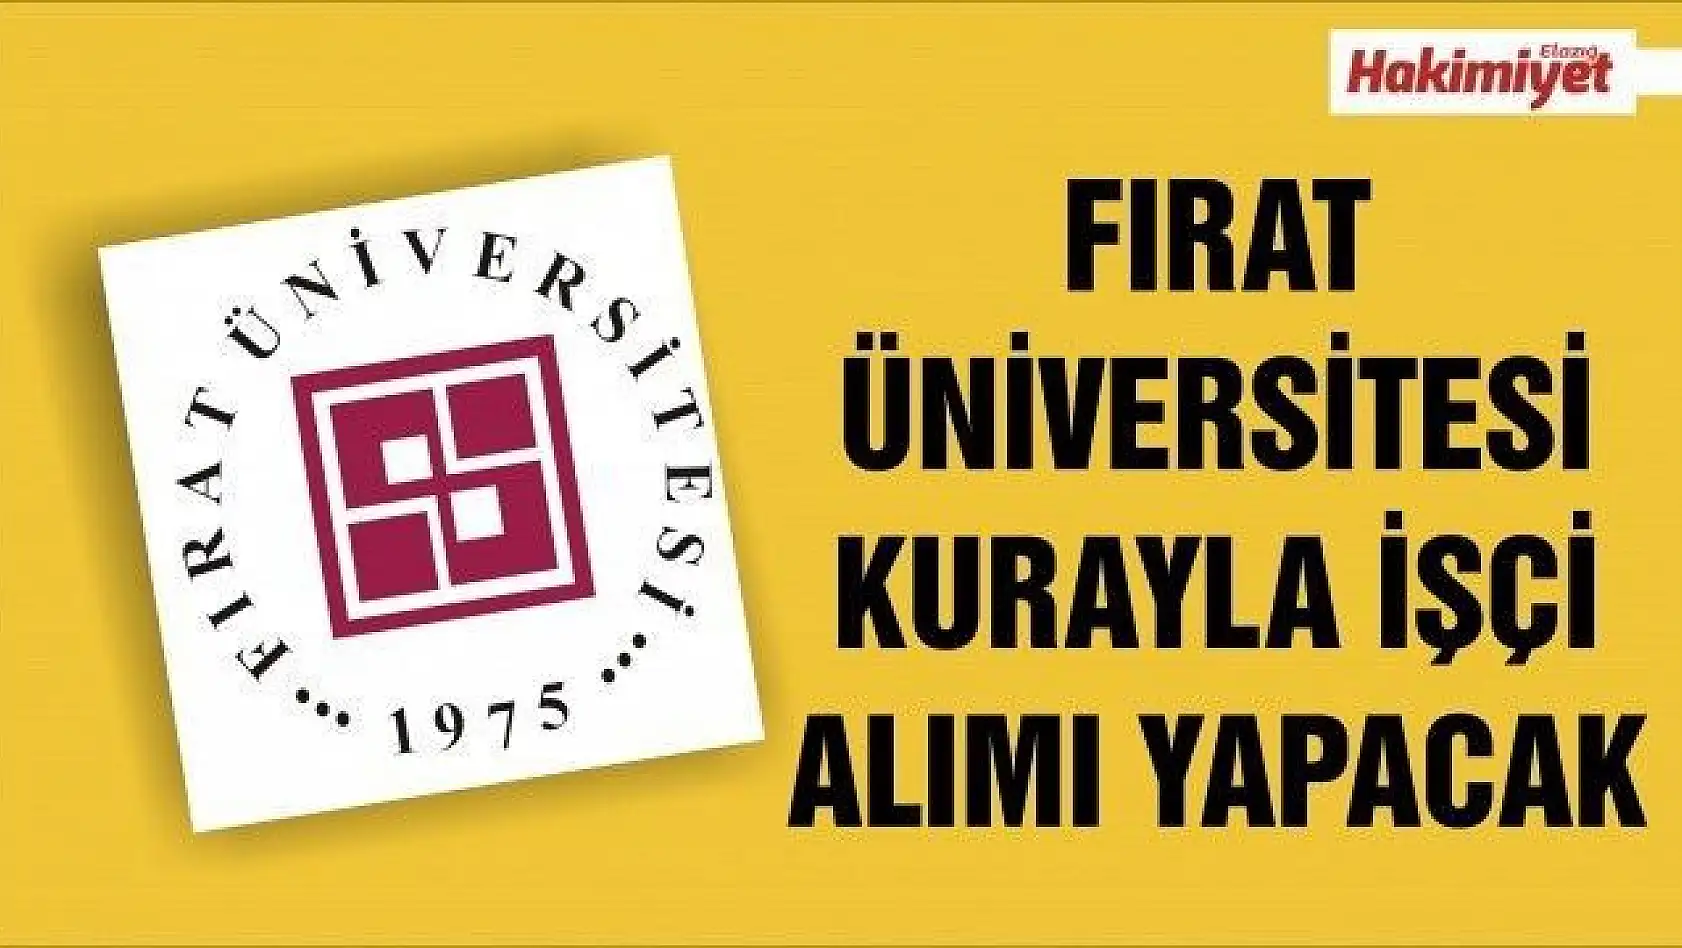 Fırat Üniversitesi kura yöntemiyle 12 Sürekli İşçi Alımı Yapacak